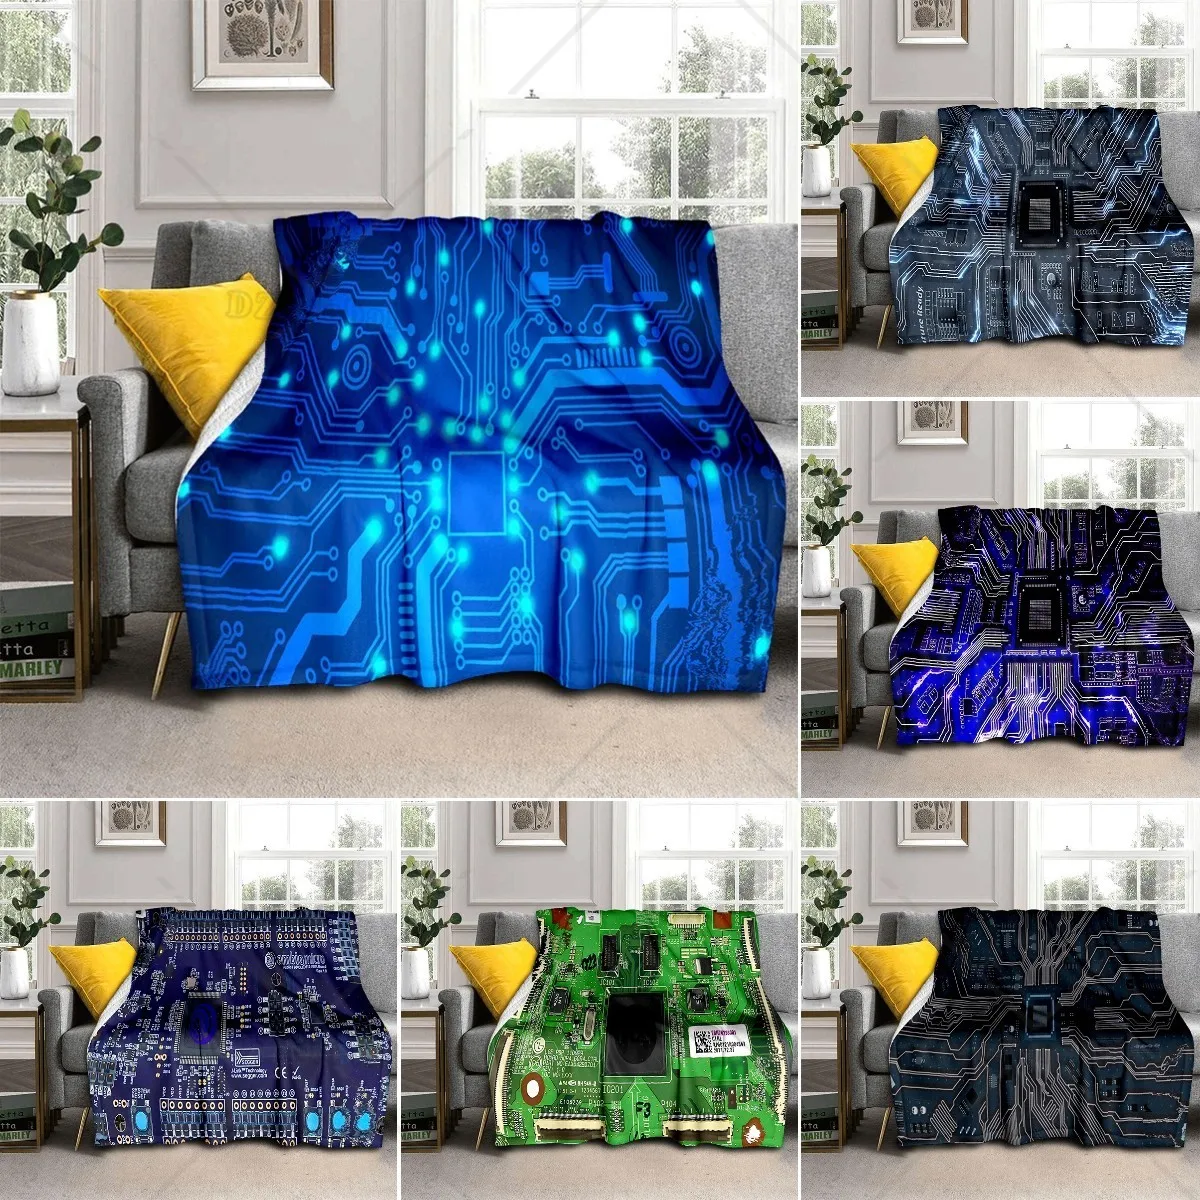 

Фланелевое Одеяло с электронными компонентами, флисовое покрывало большого размера для гостиной, дивана, супермягкое легкое теплое одеяло